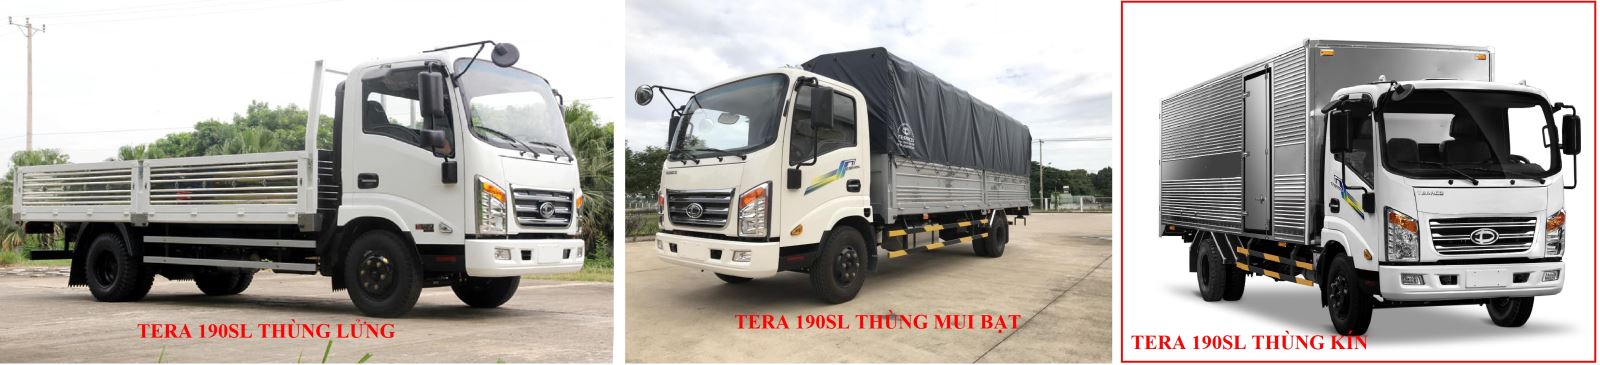 Các loại thùng của xe tải Teraco Tera 190SL